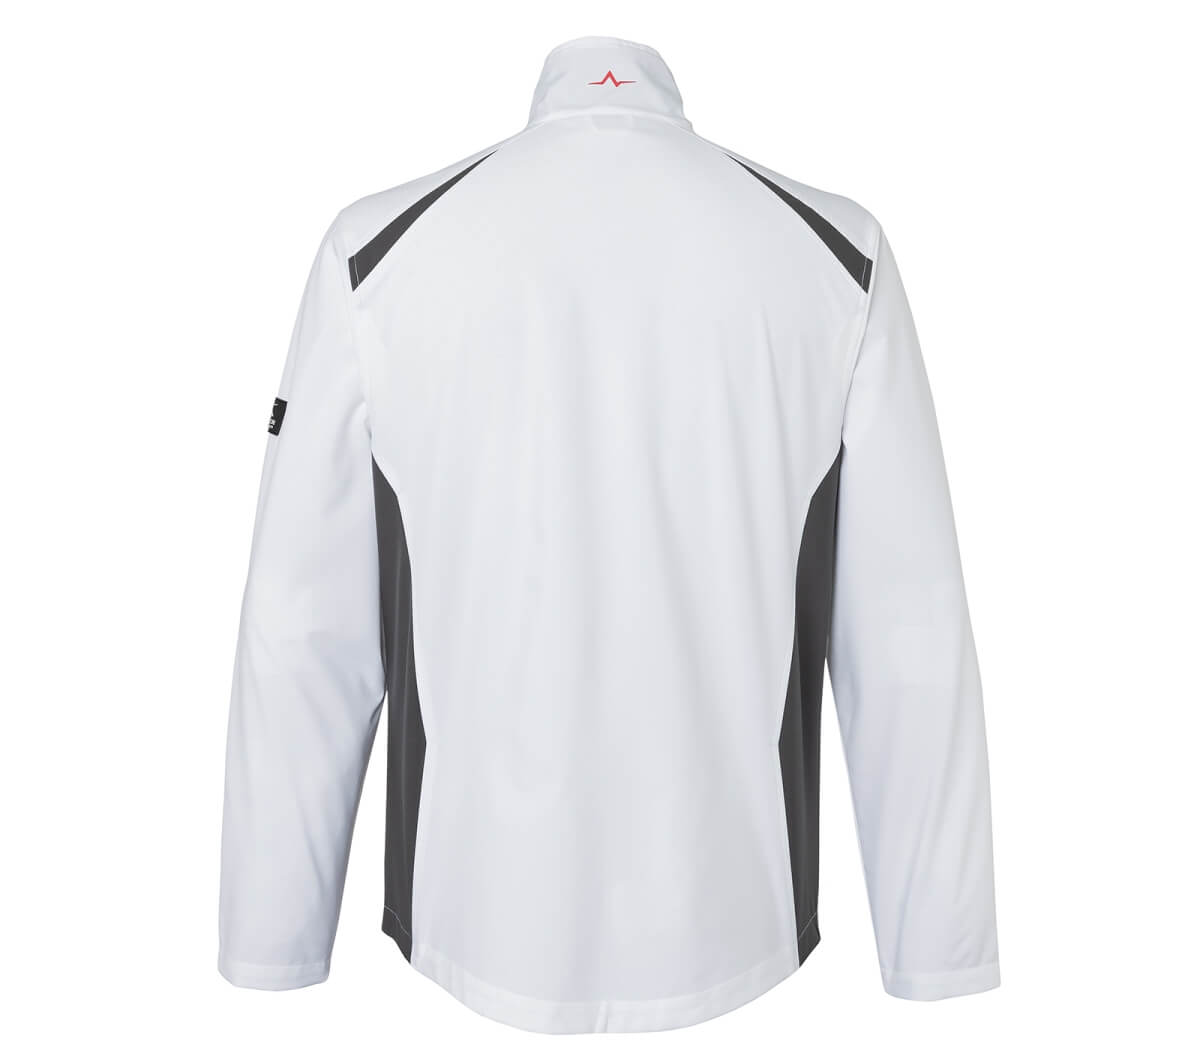 KÜBLER PULSE ECO Ultrashell Jacke in Weiß-Anthrazit, Größe L, wasserabweisend mit hohem Kragen